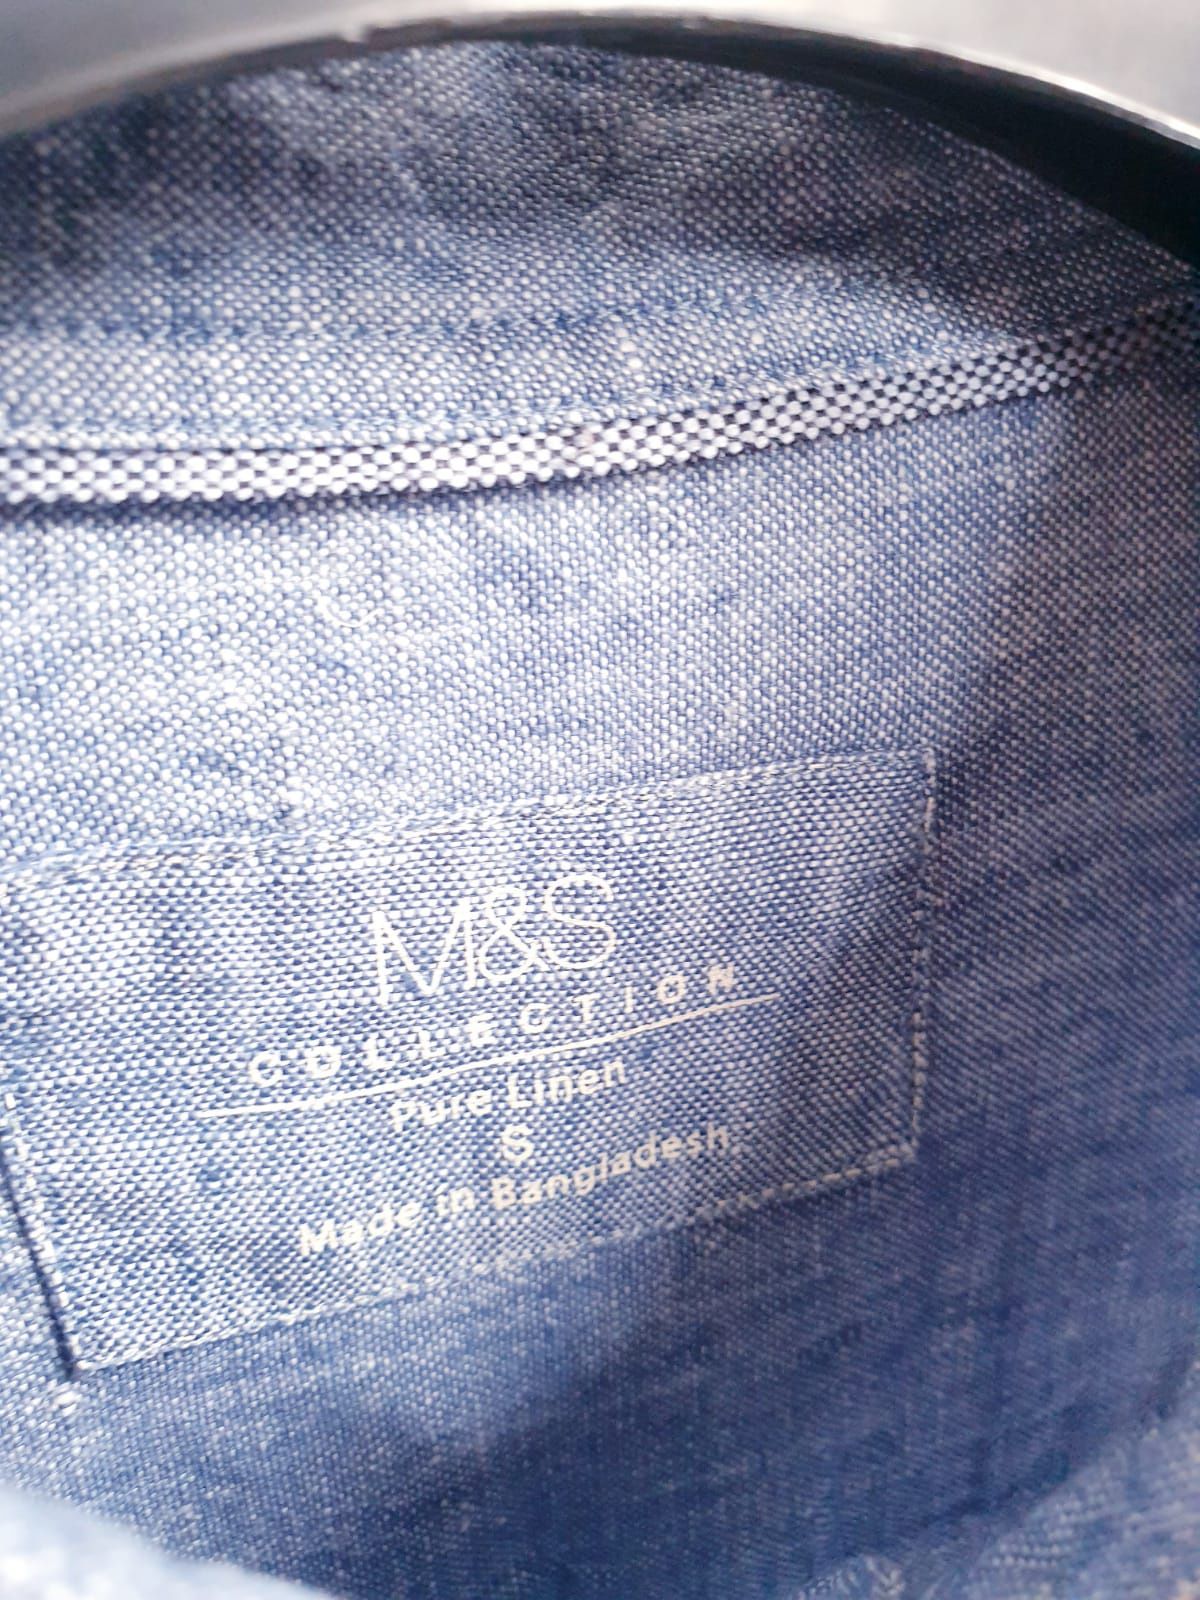 Niebieska koszula męska M&S 100% len lniana